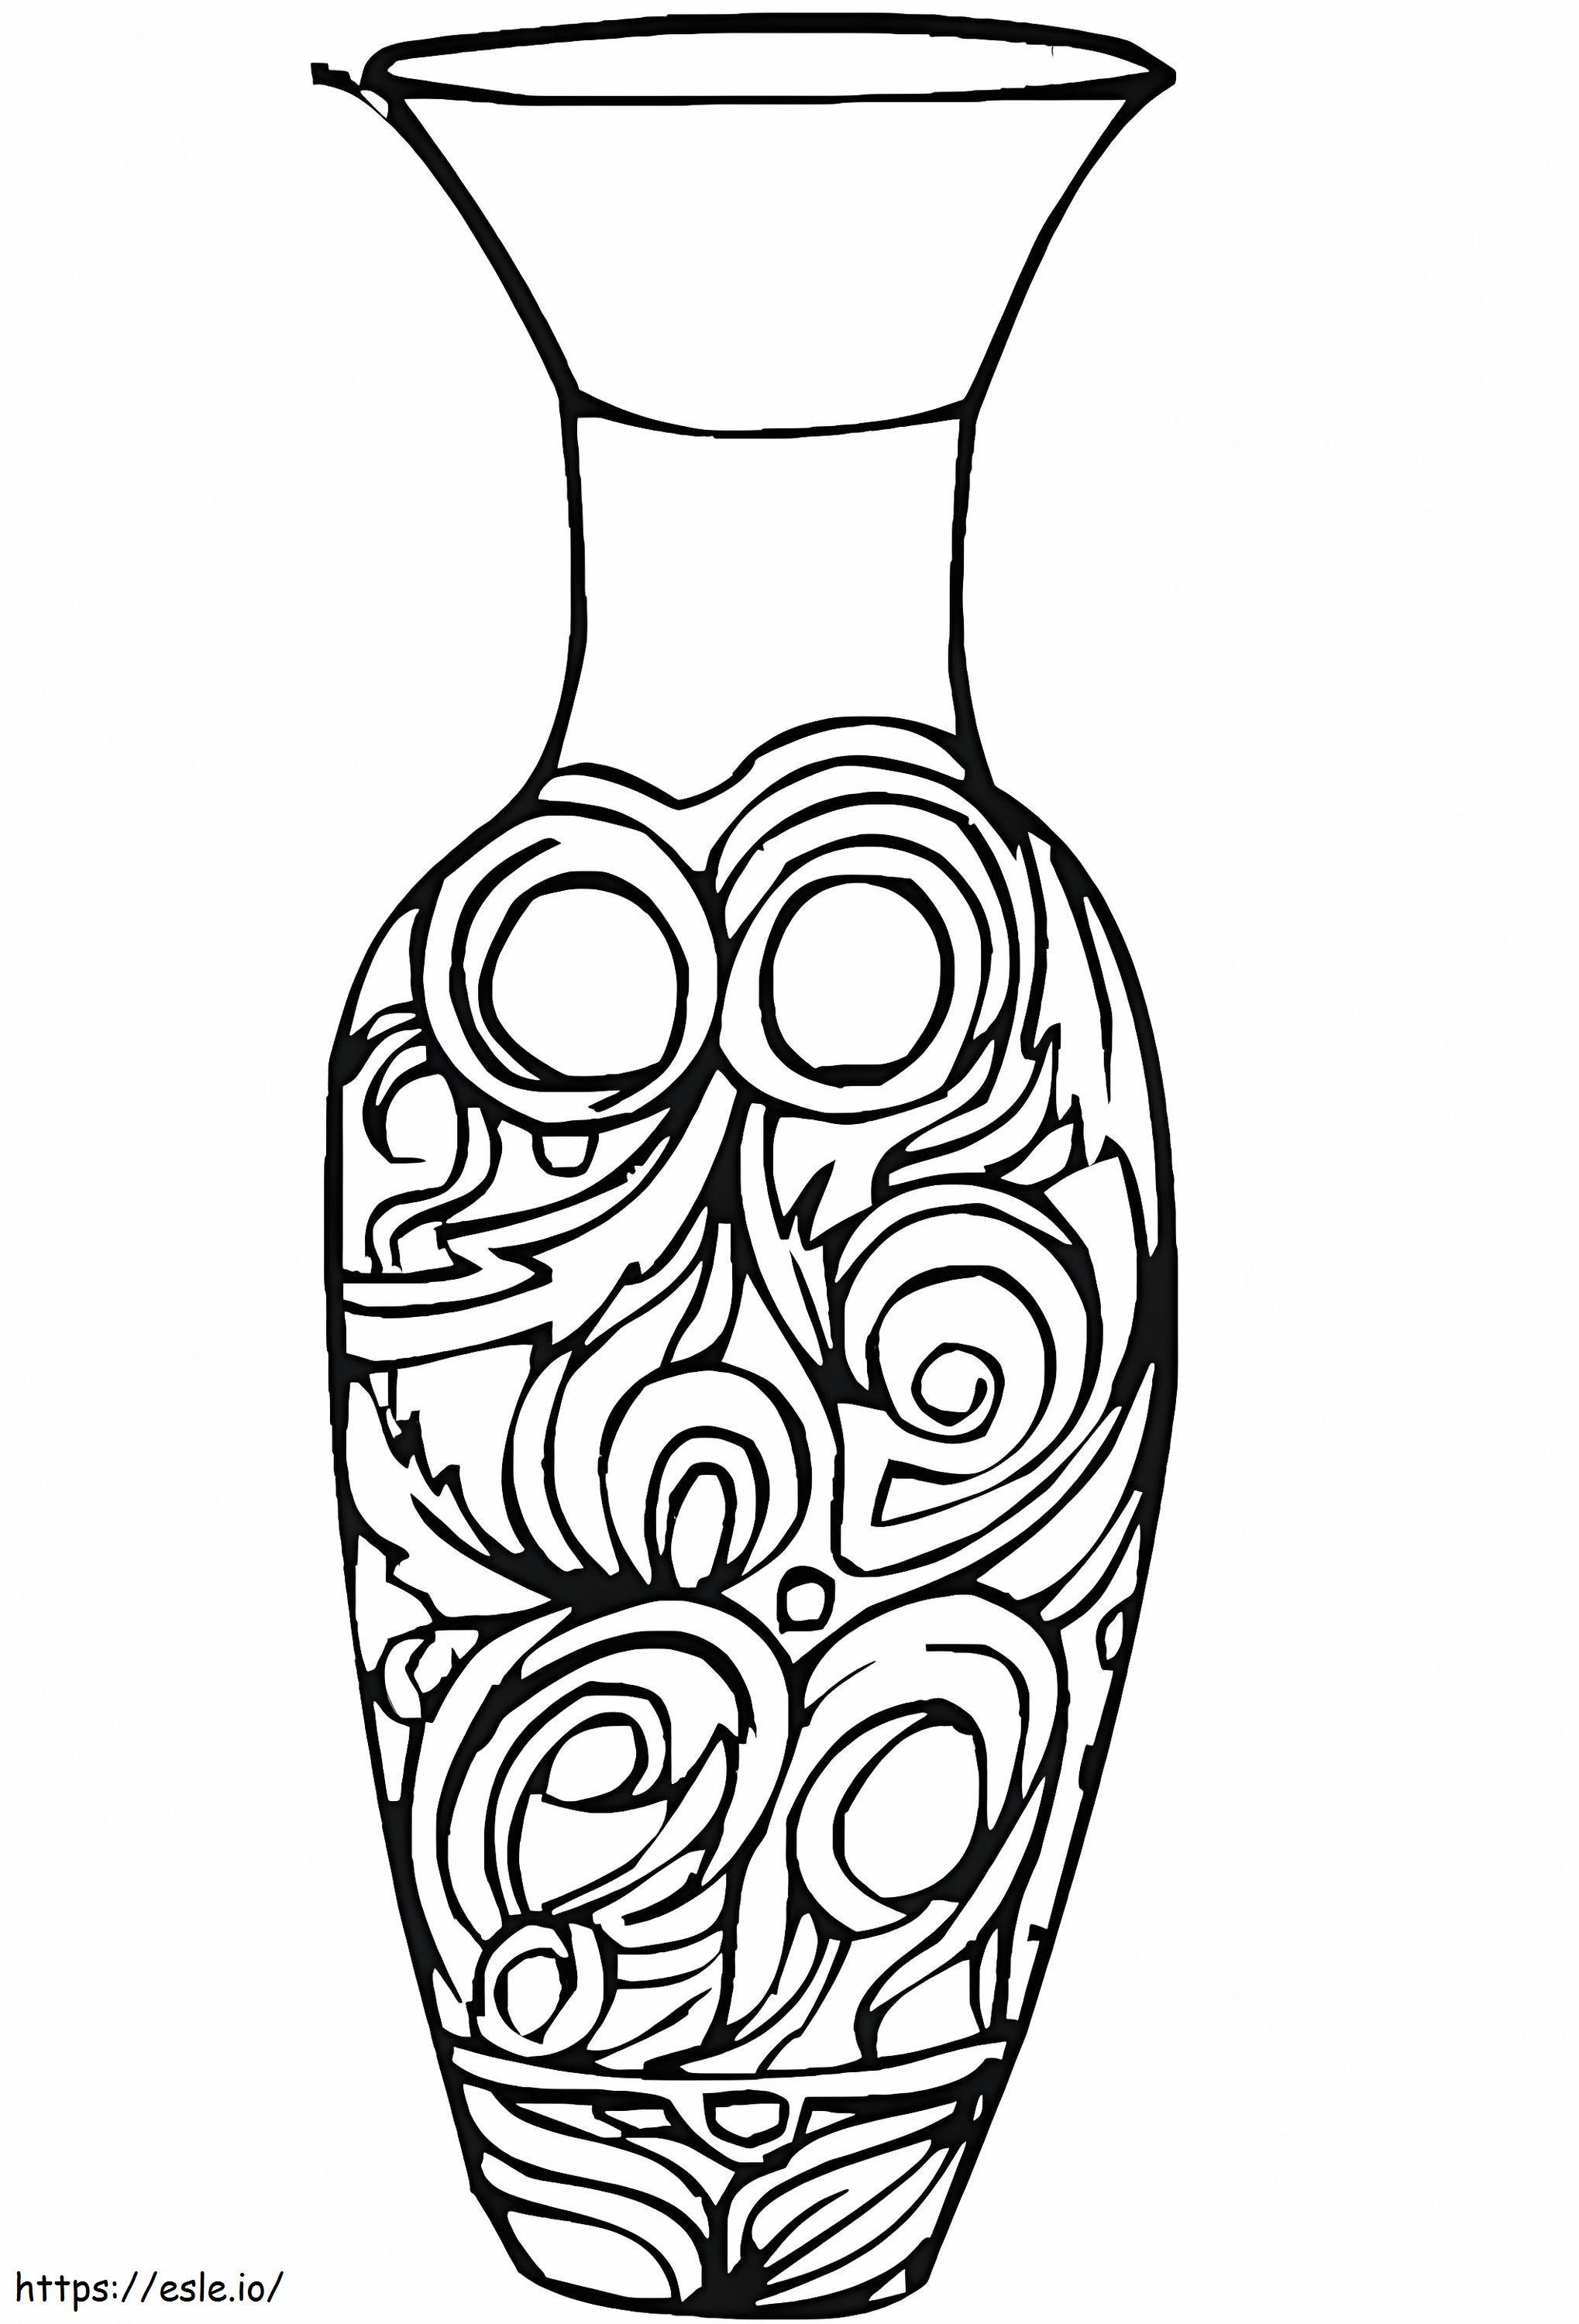 Druckbare griechische Vase ausmalbilder